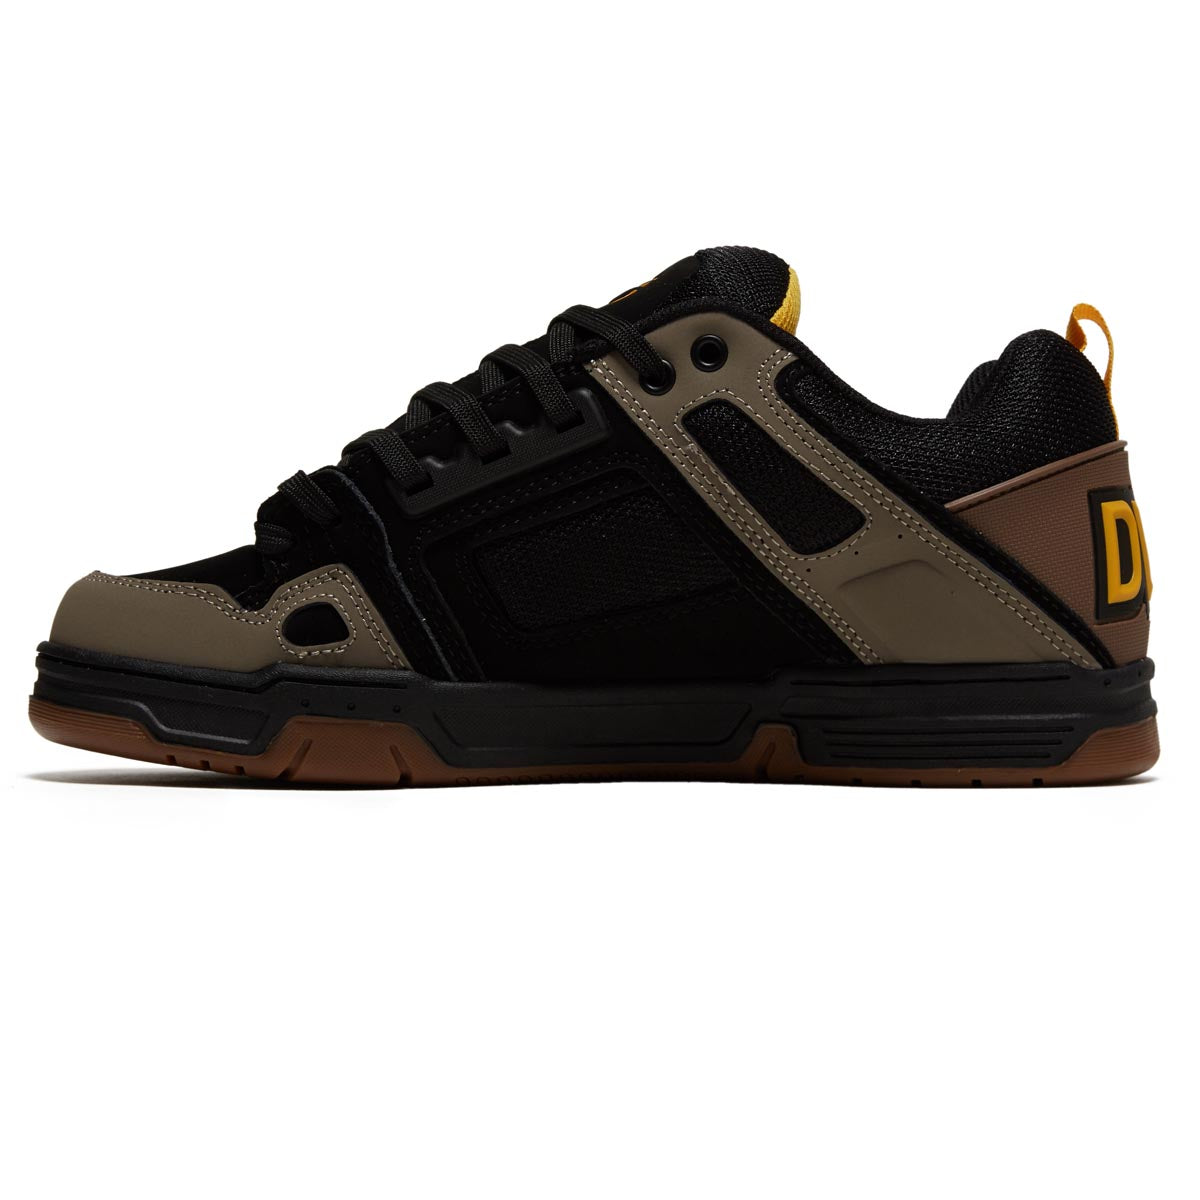 DVS Comanche Shoes - Brindle/Black/Yellow Nubuck image 2